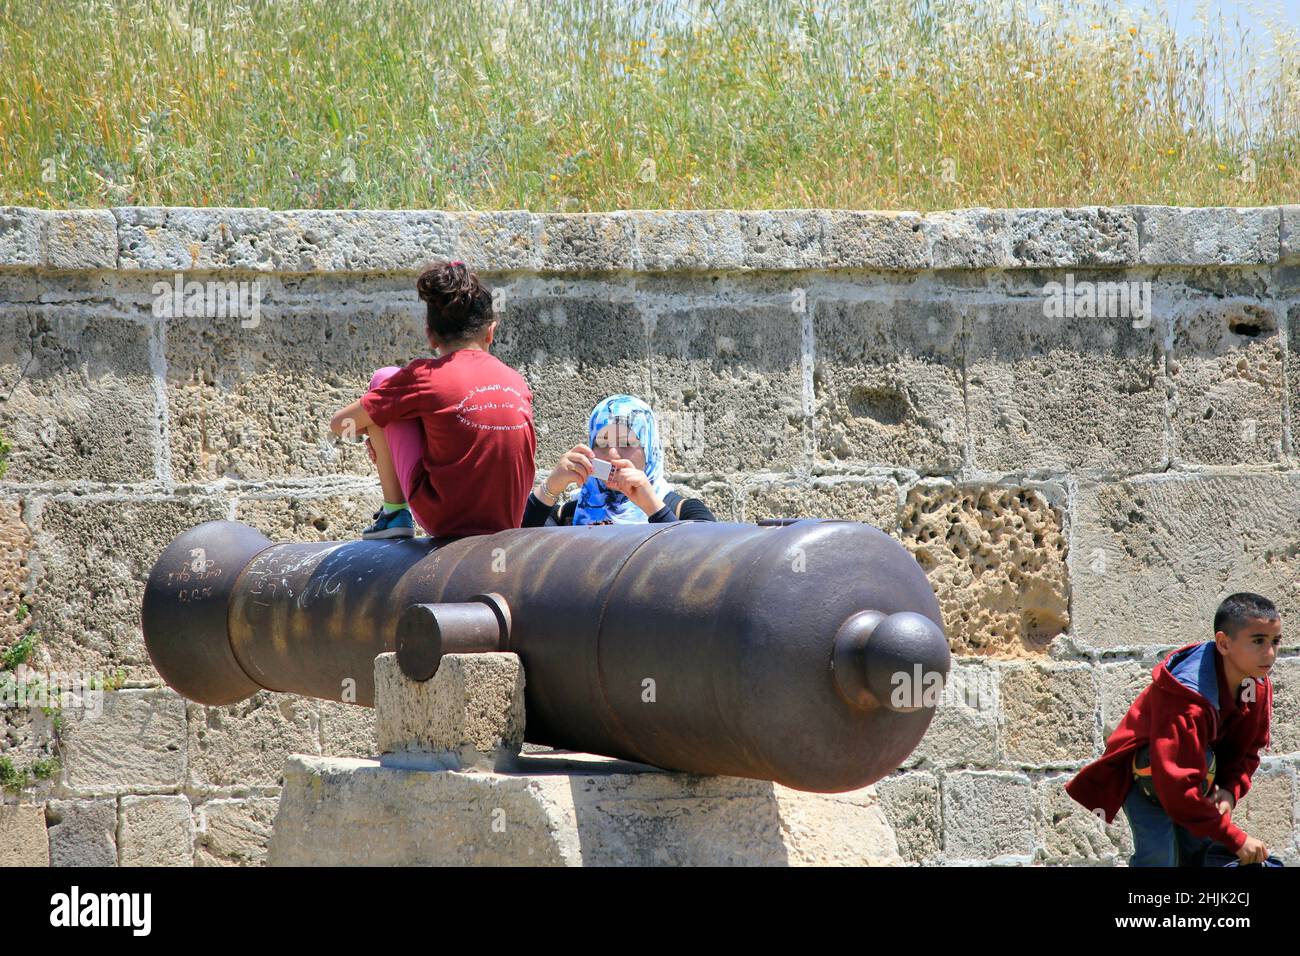 ACRO, ISRAELE - 12 MAGGIO 2011: Turisti non identificati sono fotografati ad uno dei cannoni sul pozzo della fortezza. Foto Stock